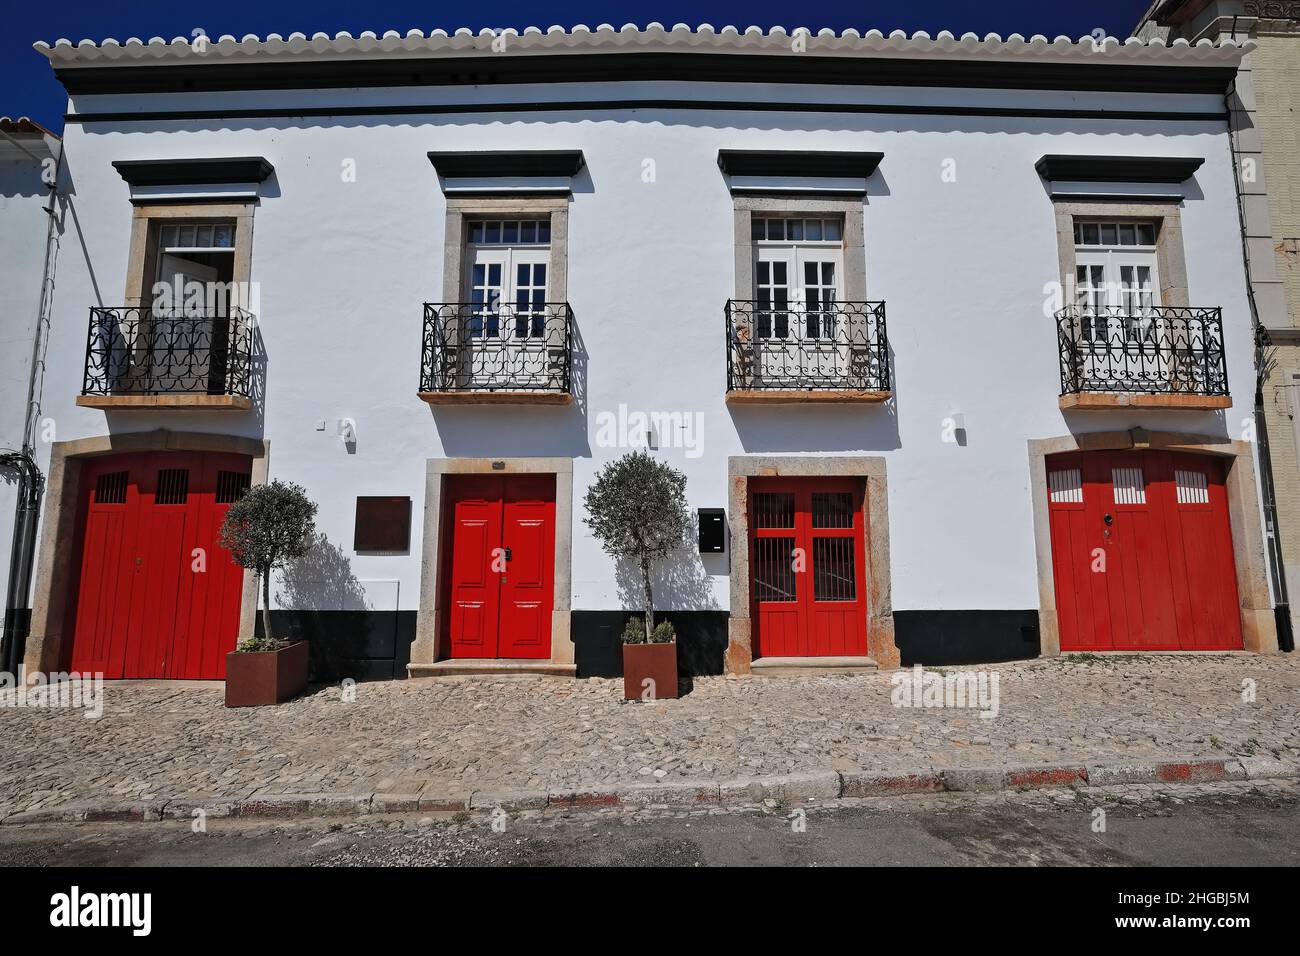 Facciata dipinta di bianco-casa cittadina vernacolare-porte rosse-quattro balconi con ringhiere in ferro battuto. Tavira-Portogallo-069 Foto Stock